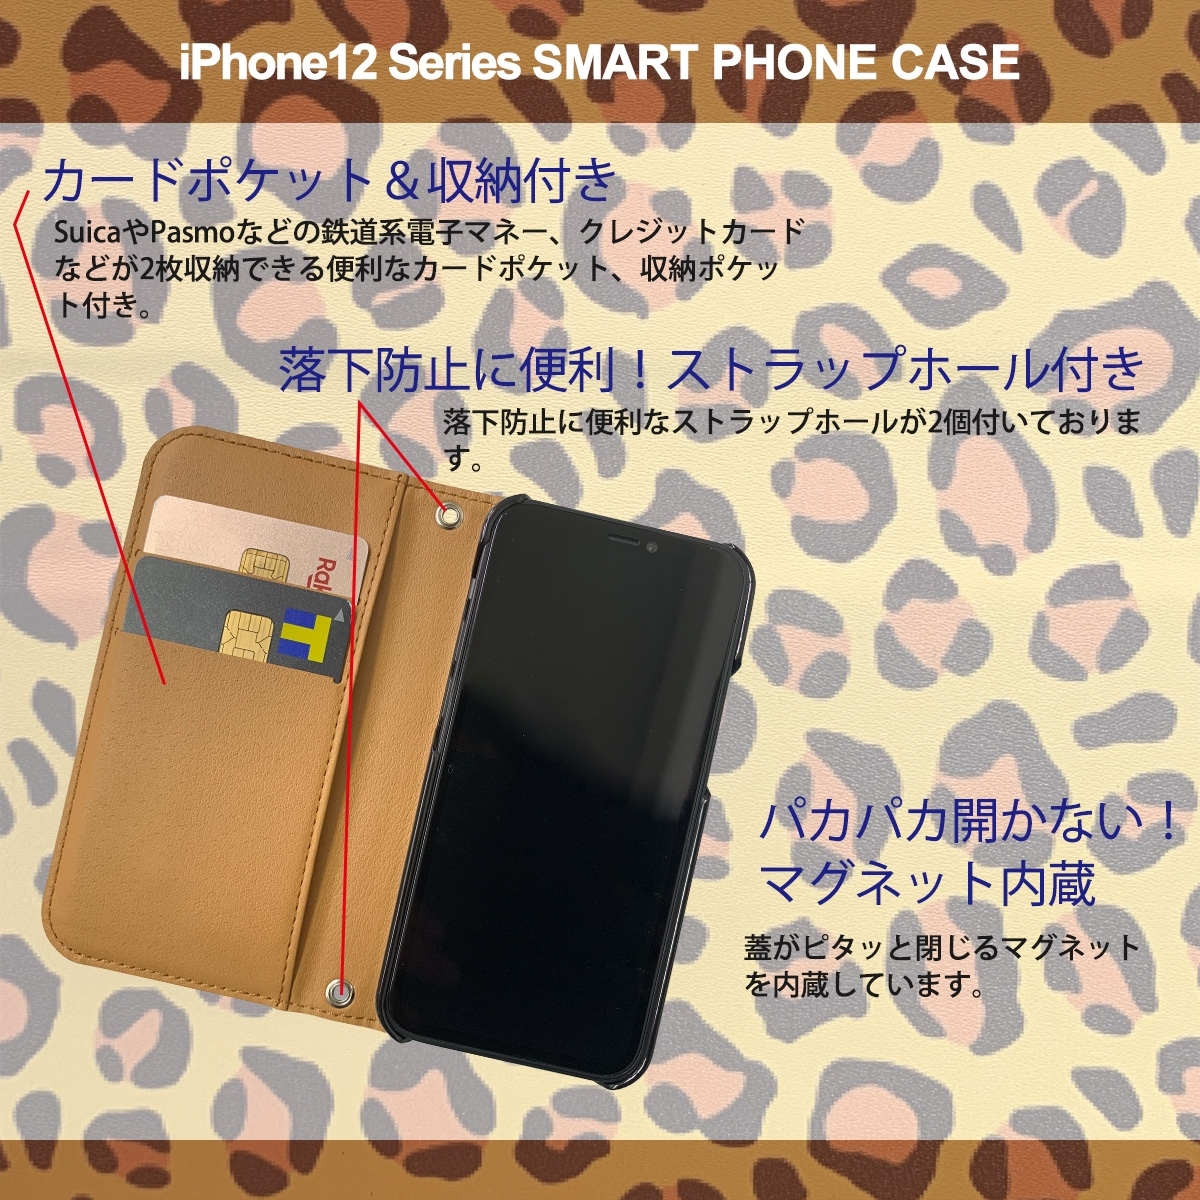 1】 iPhone12 Pro Max 手帳型 アイフォン ケース スマホカバー PVC レザー アニマル柄 ヒョウ柄 イエロー